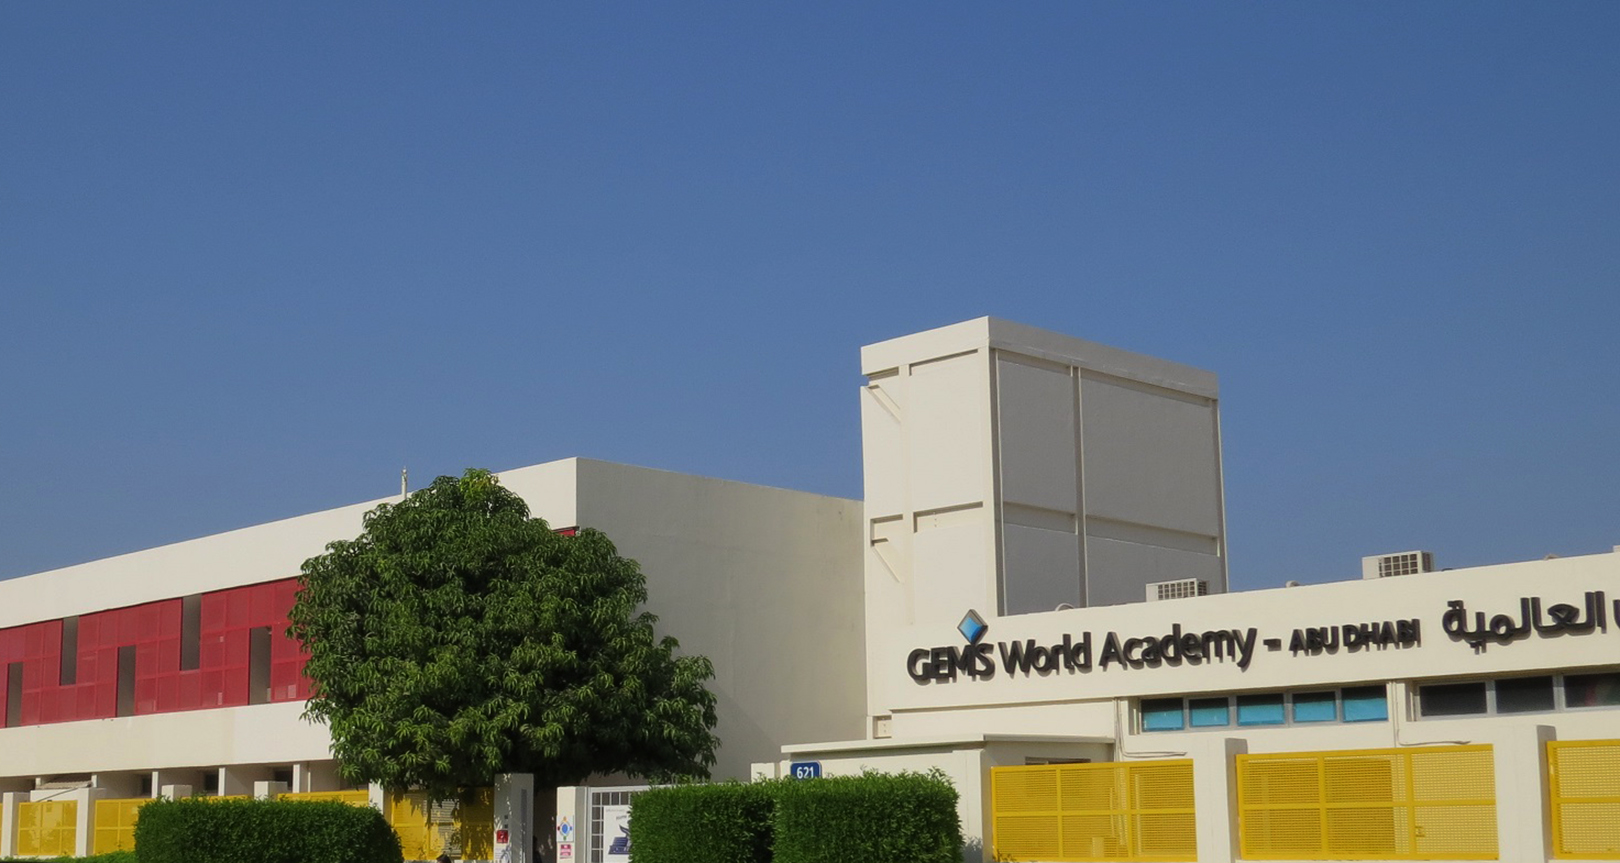 GEMS World Academy Buildings